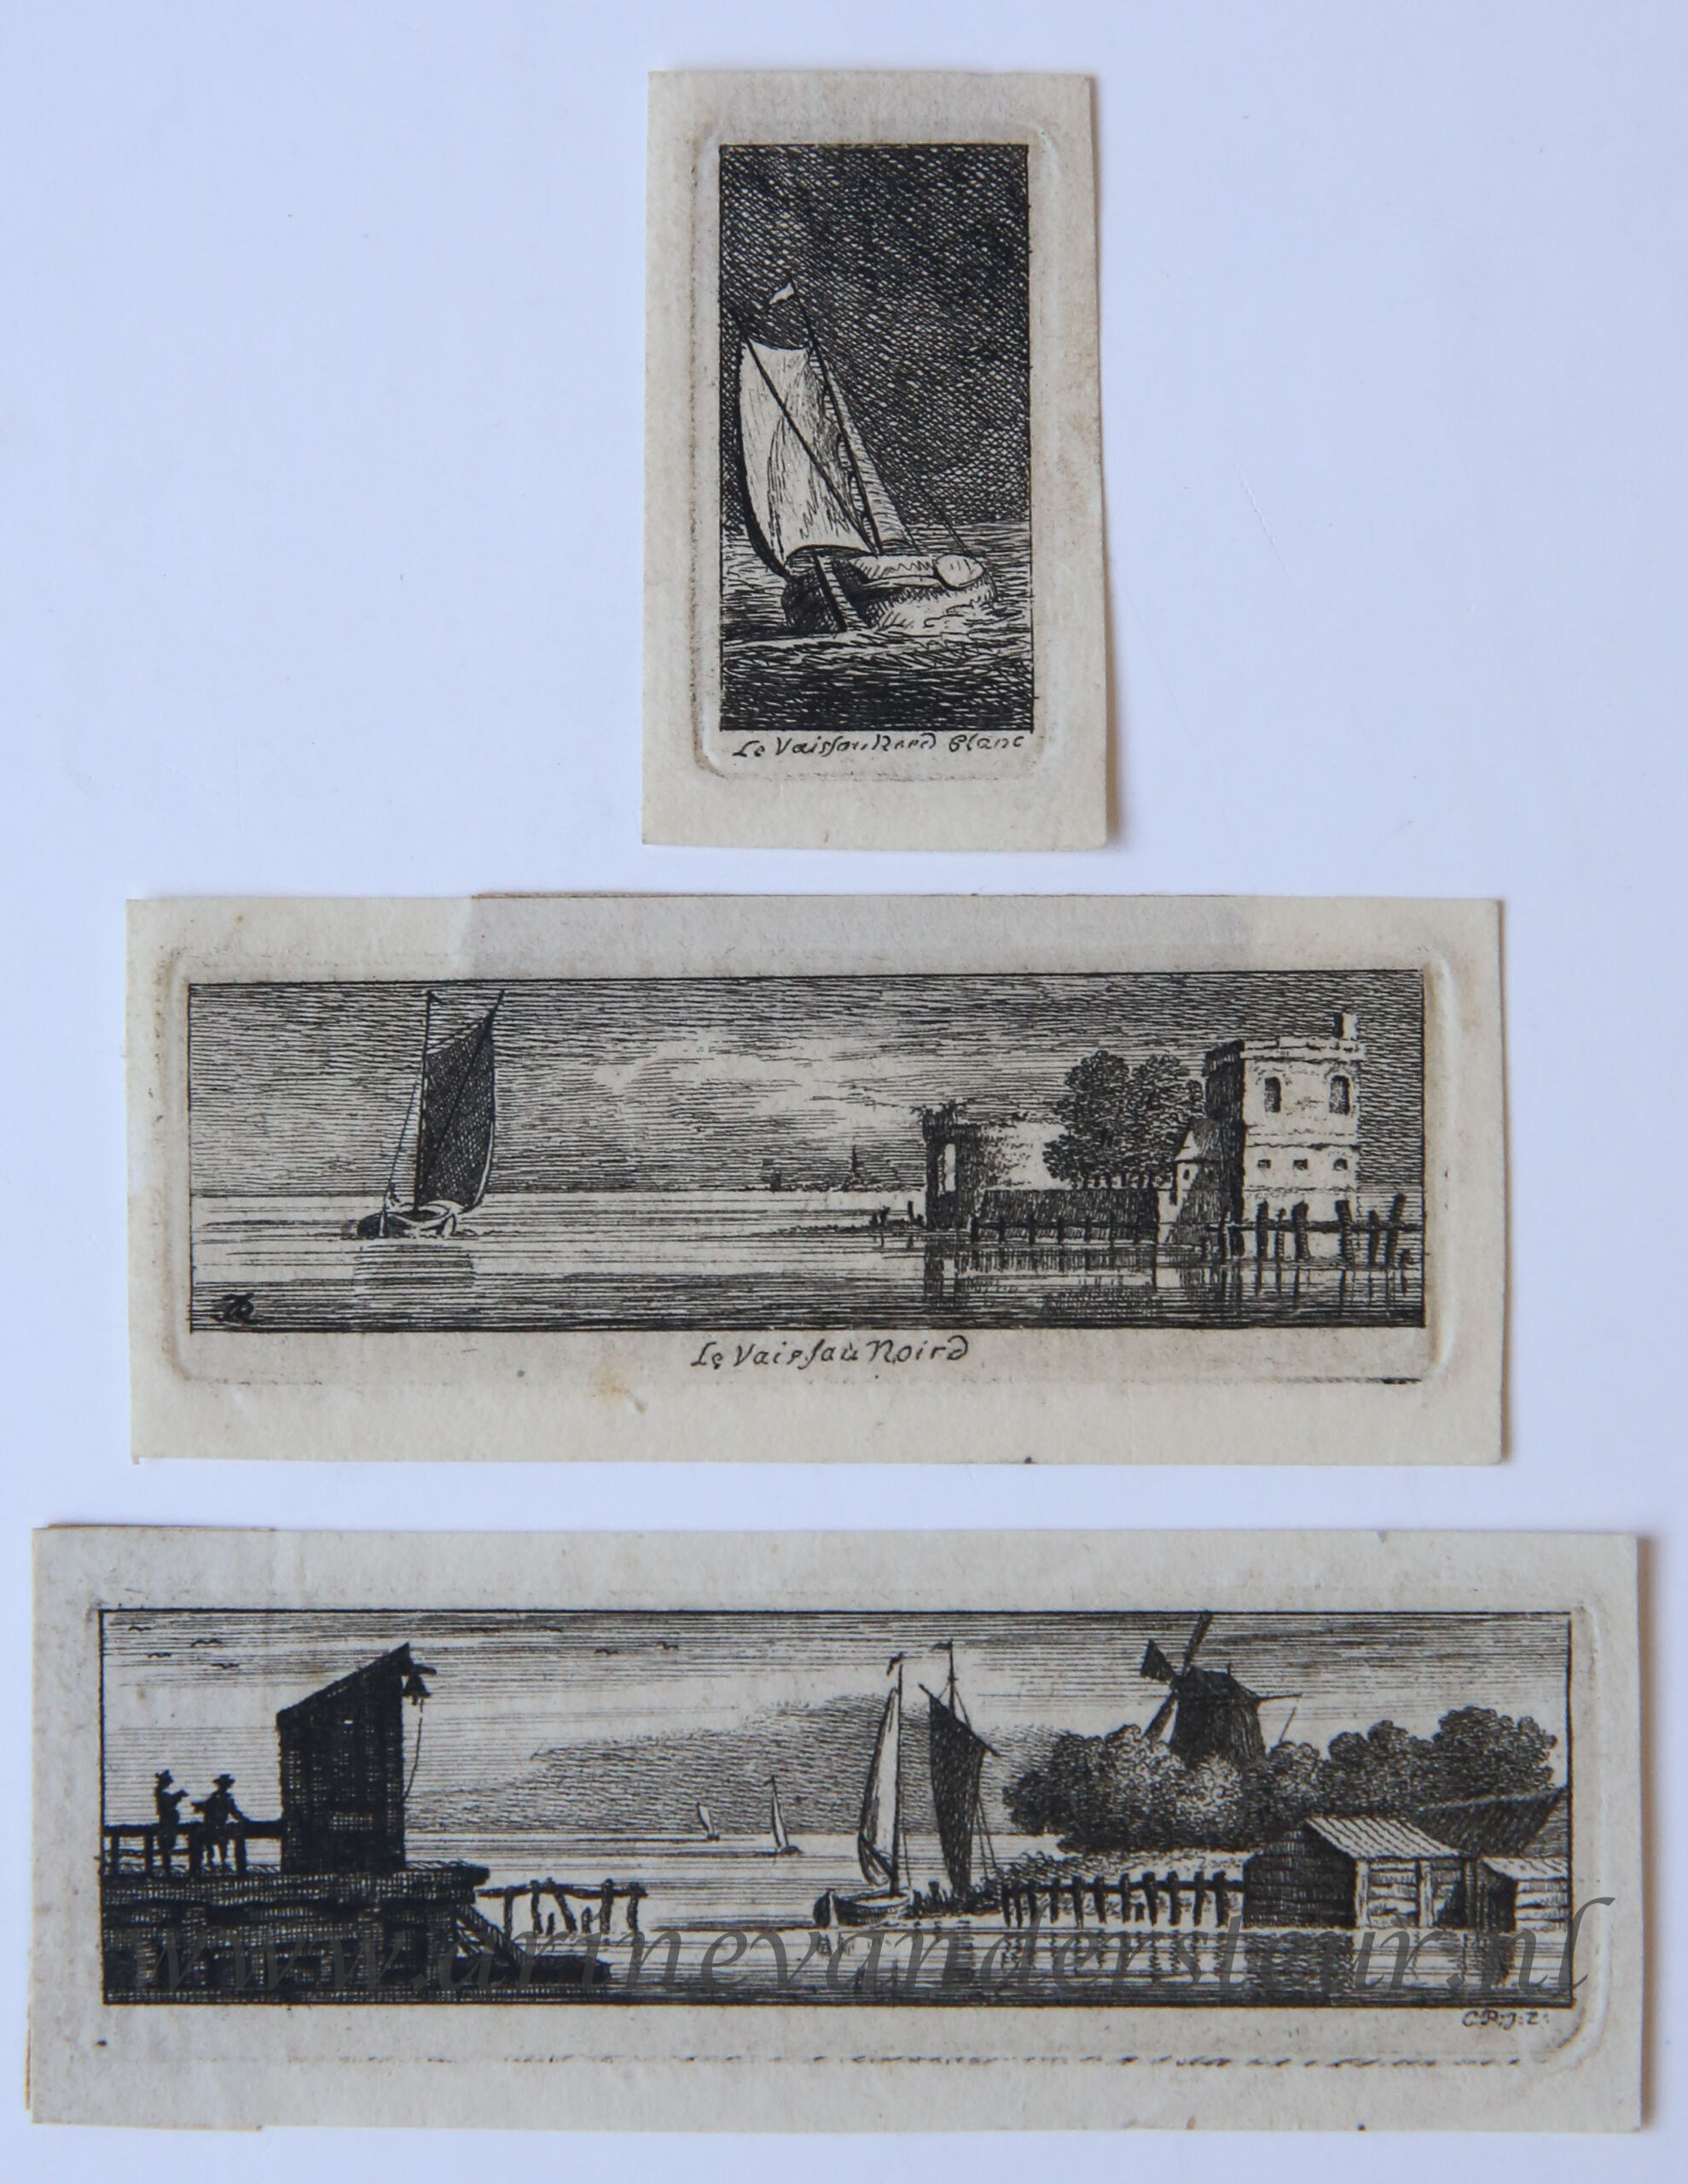 [Antique print, etching] Small seascapes (miniatuur zeegezichten), published 1766.